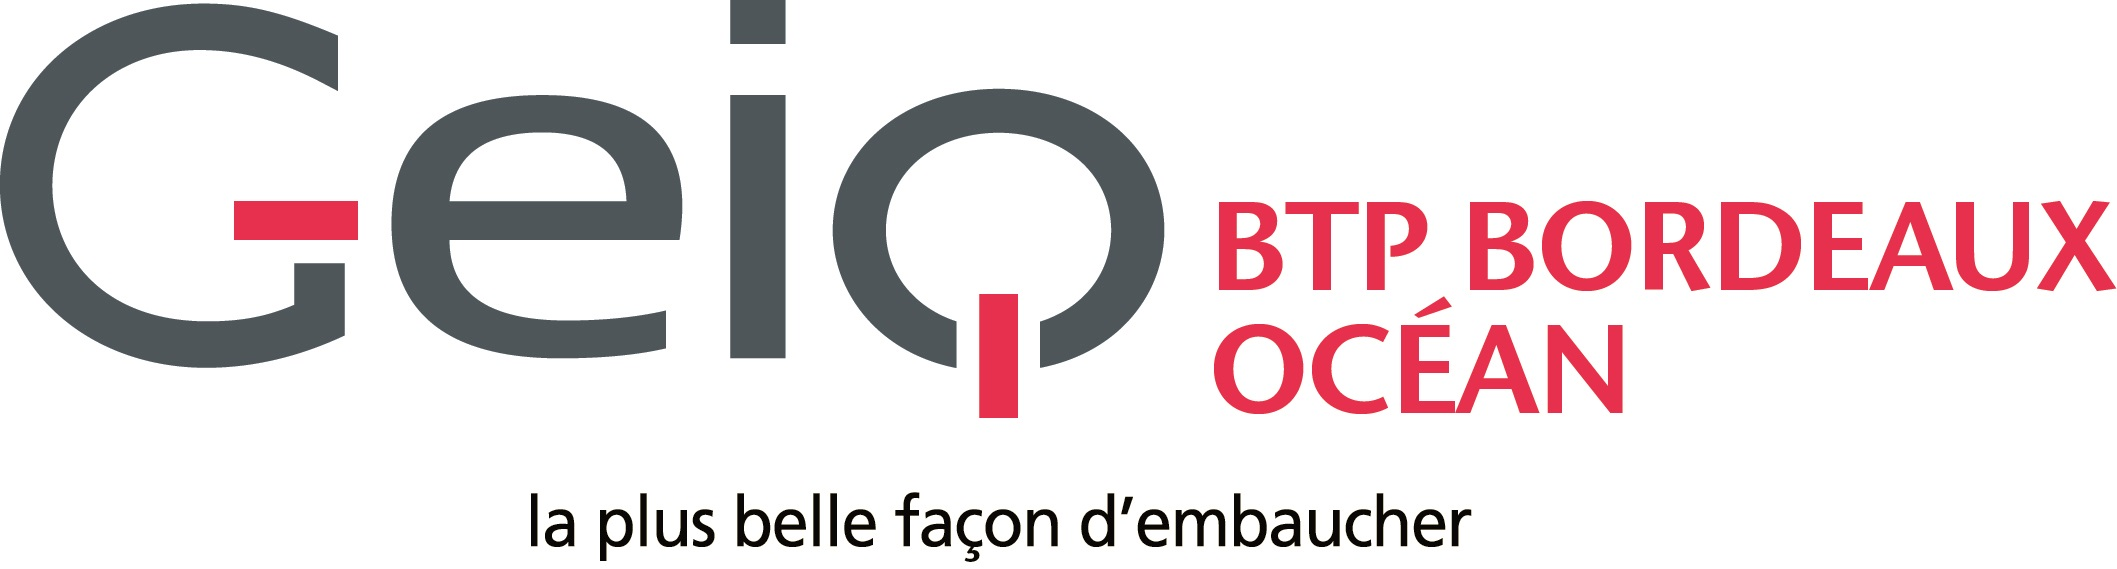 Logo GEIQ BTP